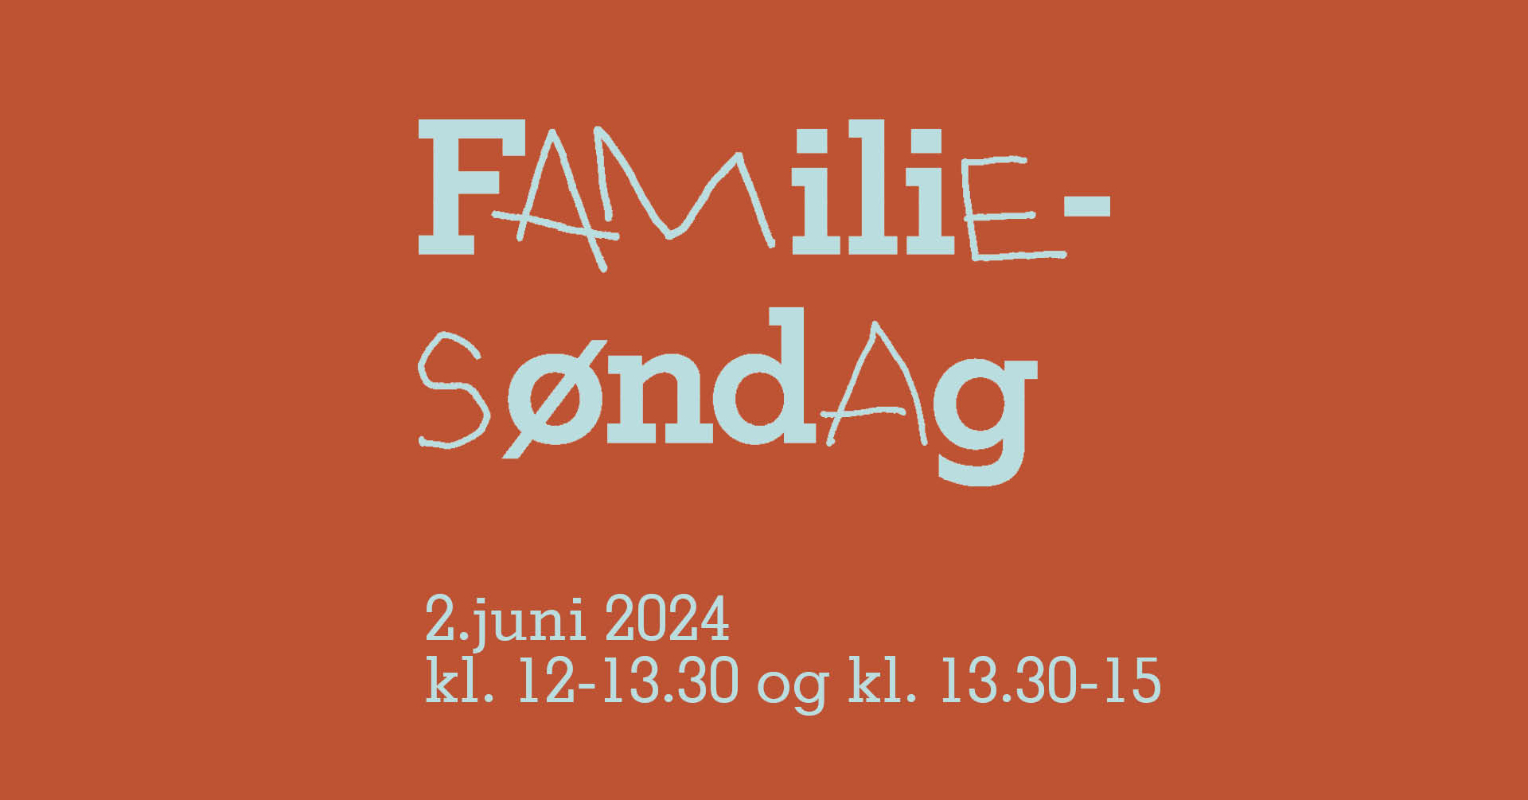 May be an image of text that says "FAMiliE- SơndAg 2.juni 2024 kl. 12-13.30 og kl. 13.30-15"